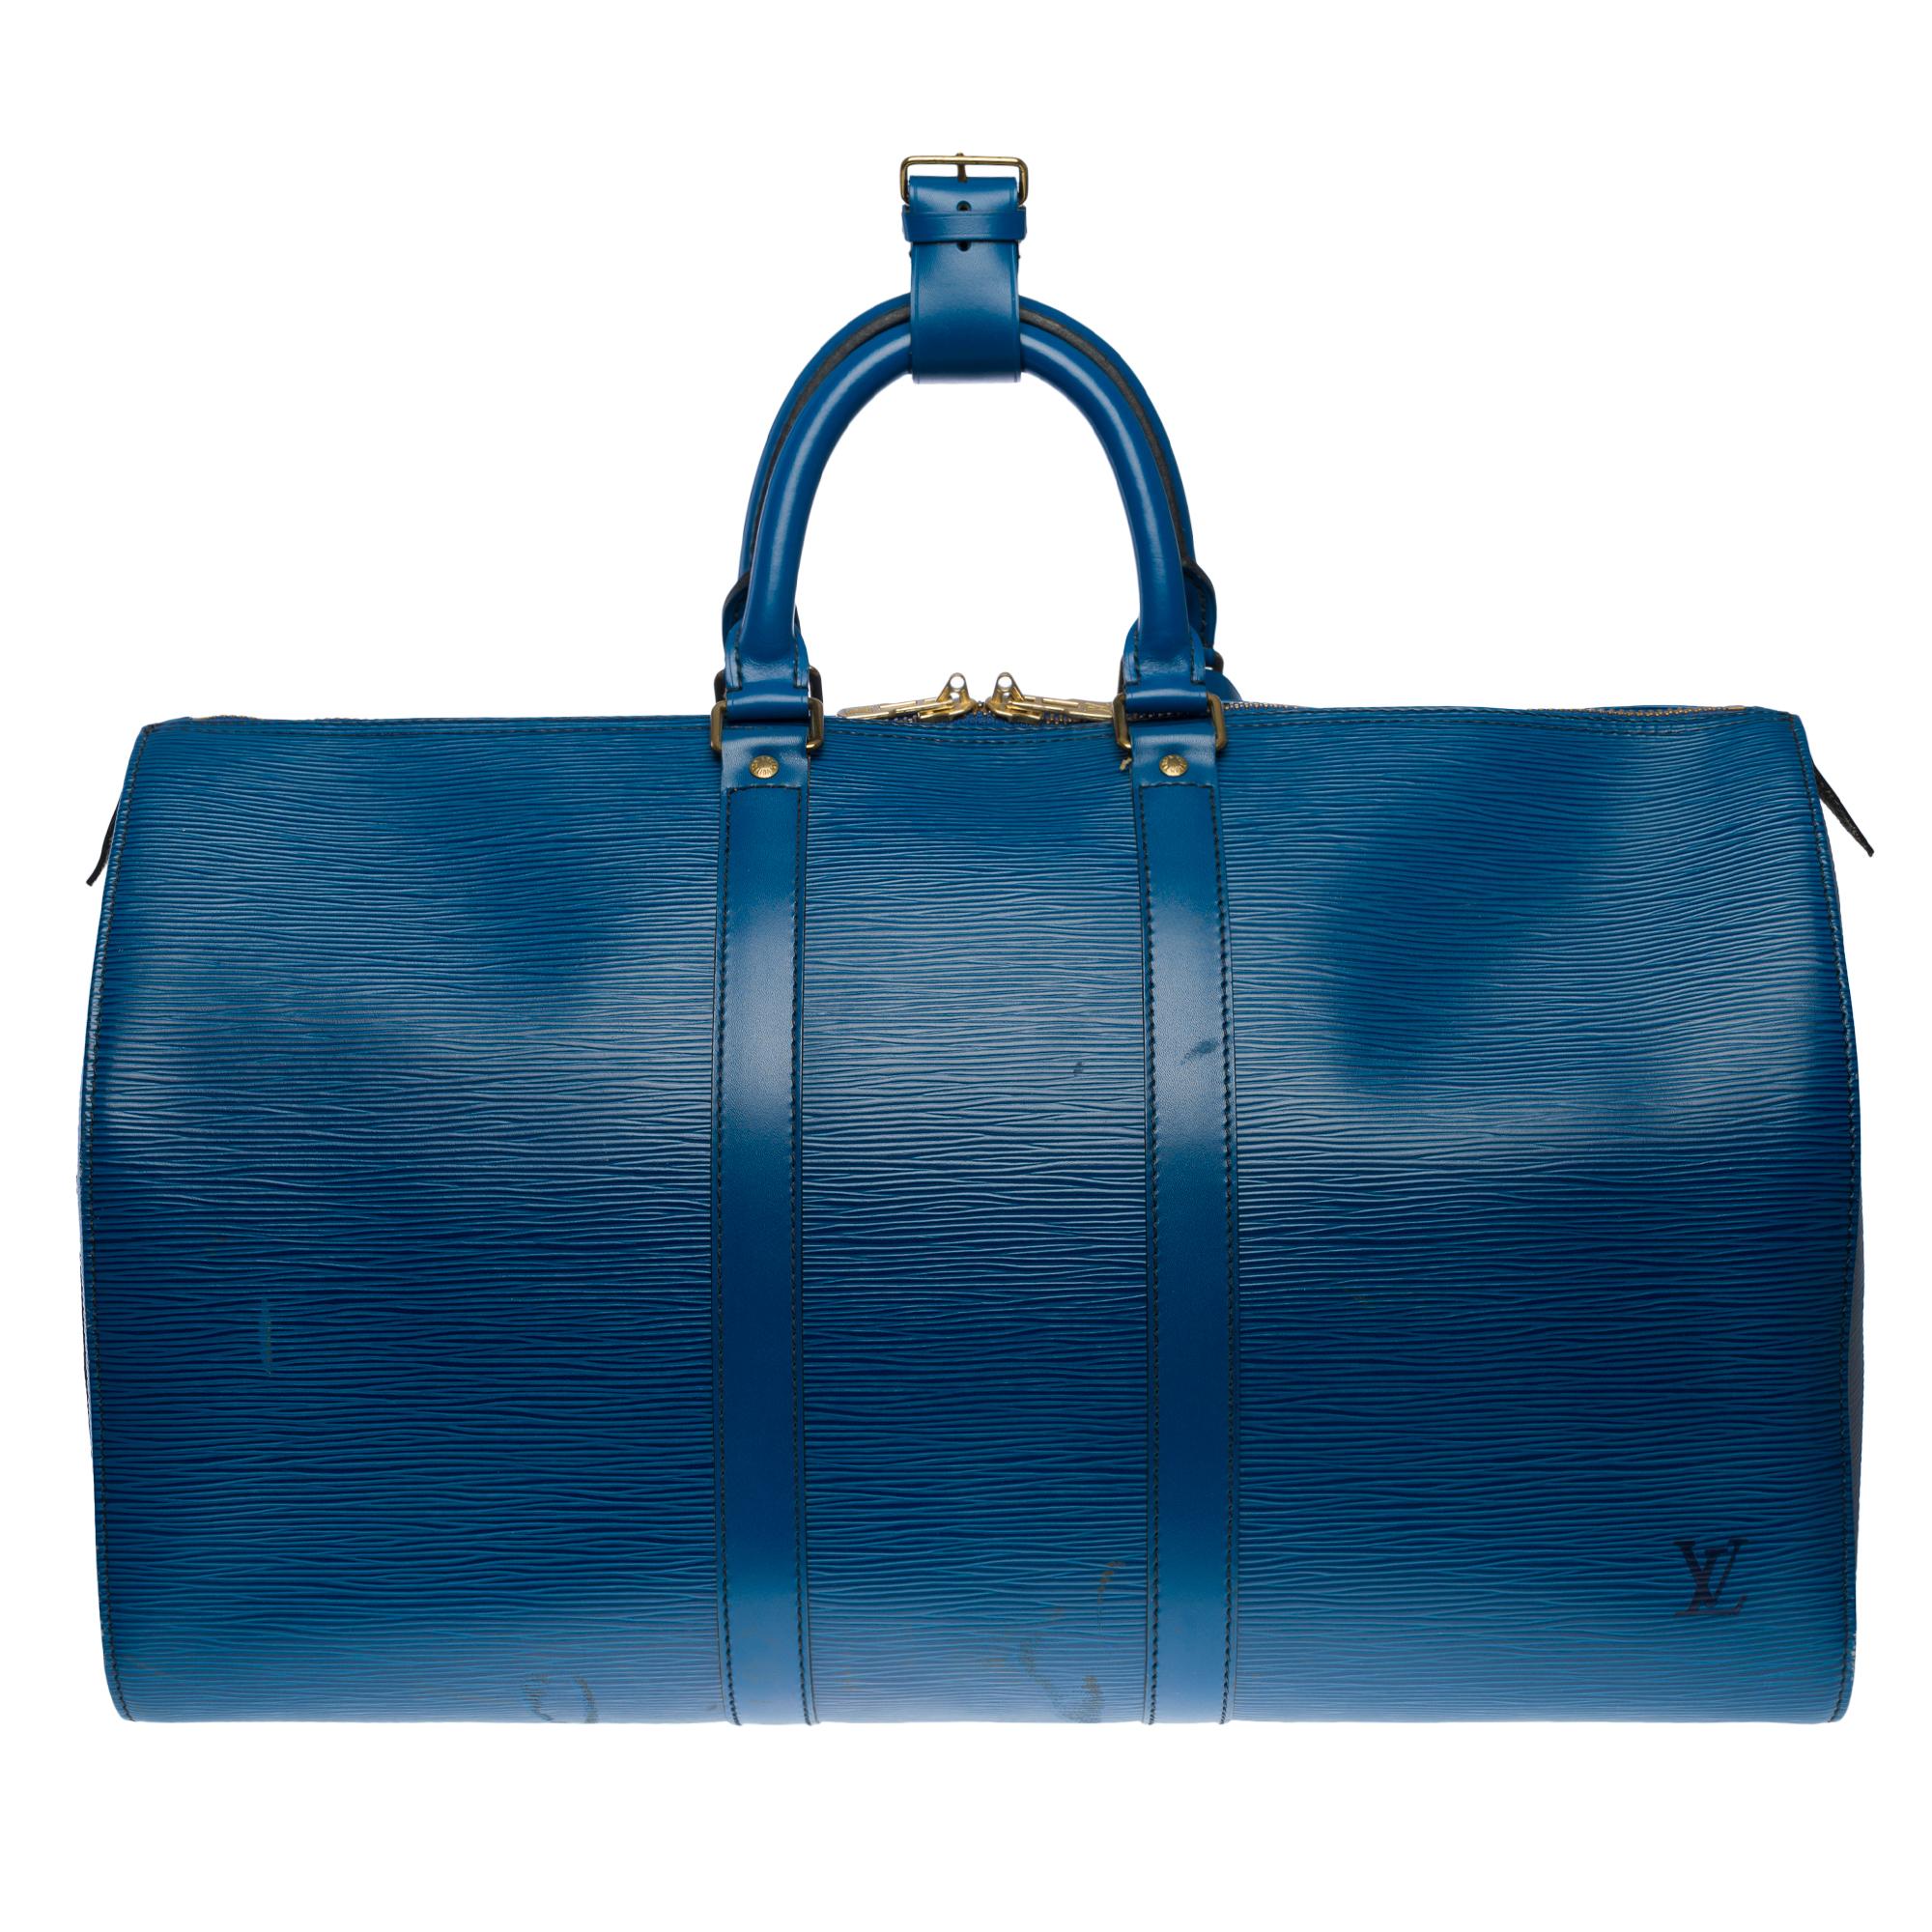 Le très chic sac de voyage Louis Vuitton Keepall 45 en cuir épi bleu cobalt, double fermeture à glissière, double poignée en cuir bleu
Zip
Une poche latérale plaquée
Doublure intérieure en daim bleu
Signature : 